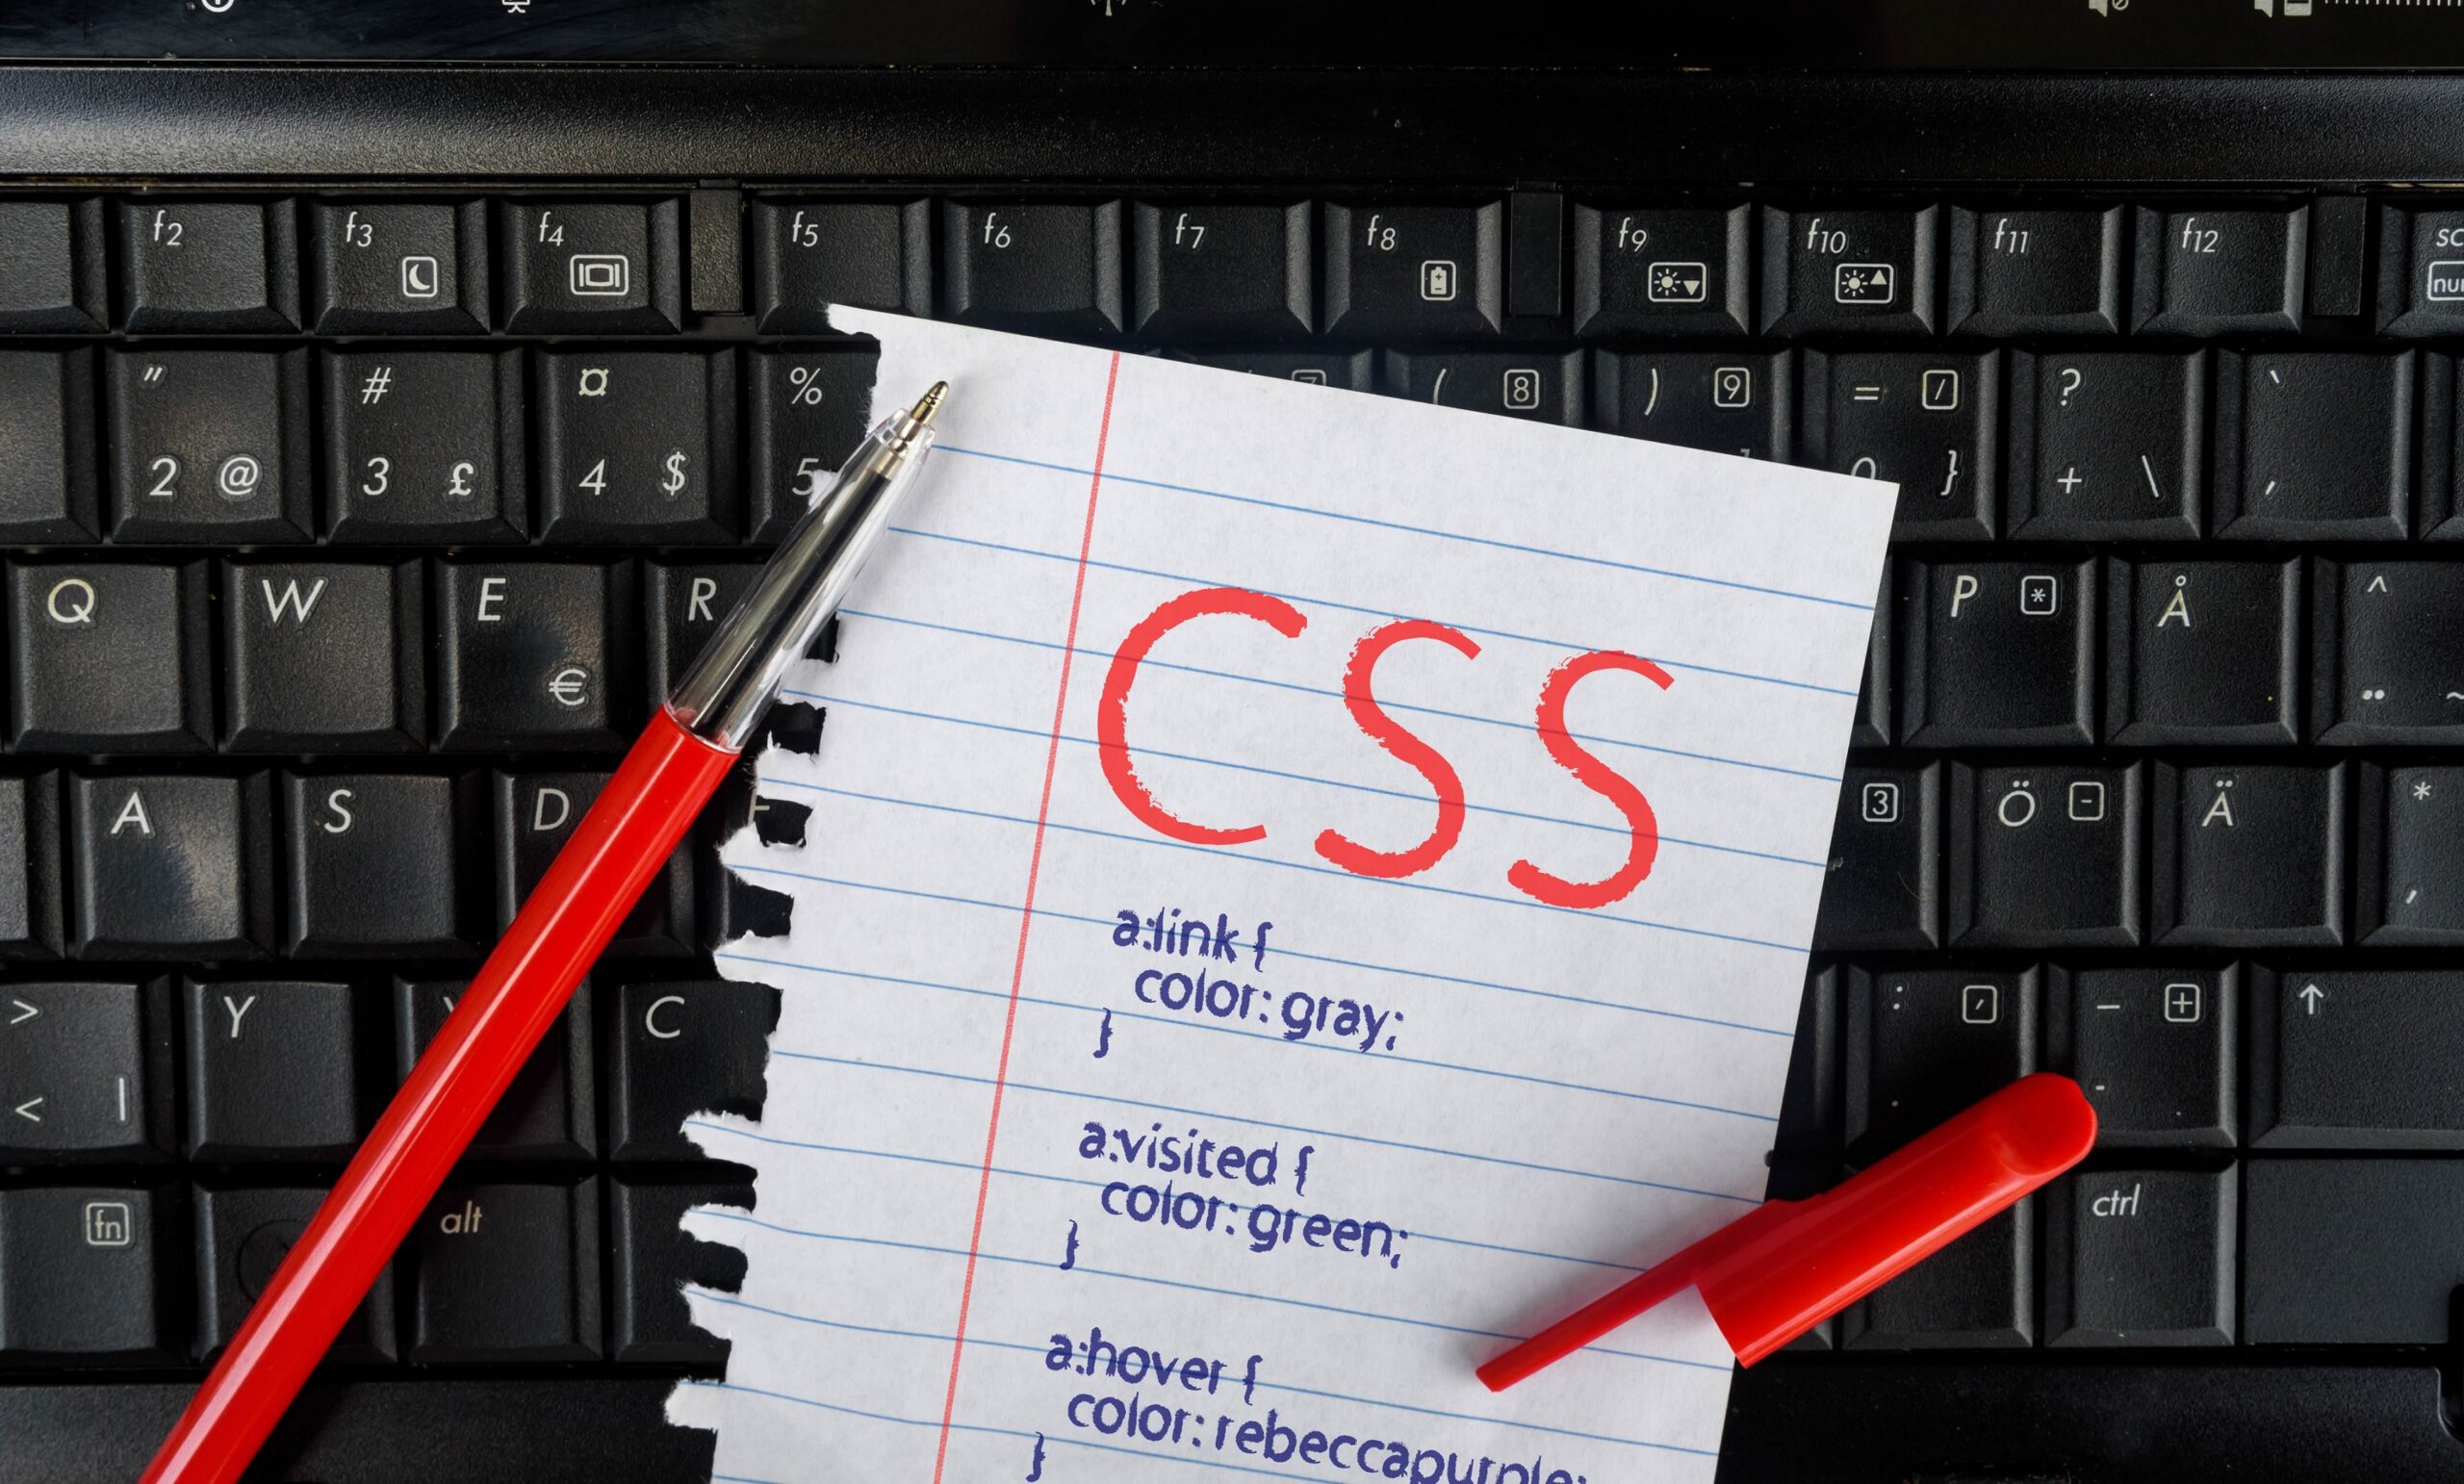 黒いキーボードの上に赤文字でCSSと書かれたメモ帳とペンが置かれている